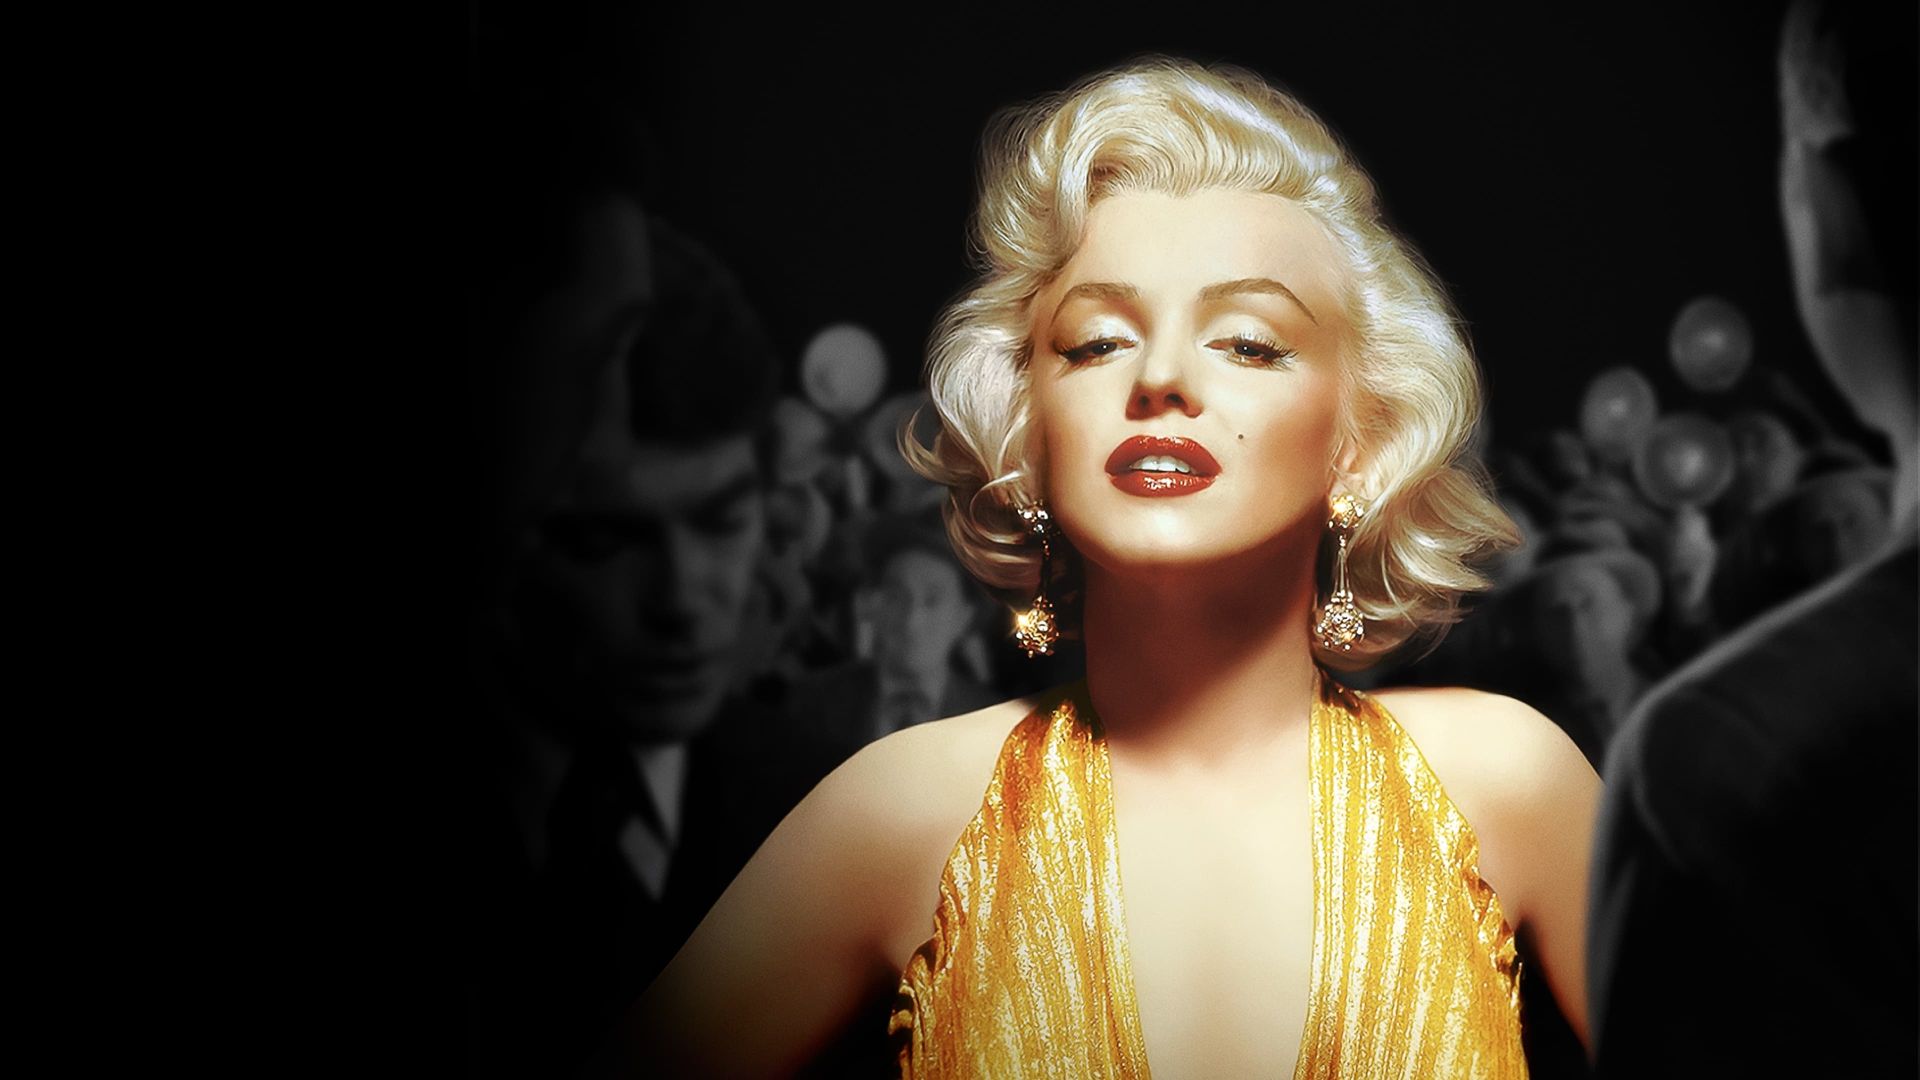 Reframed: Marilyn Monroe background